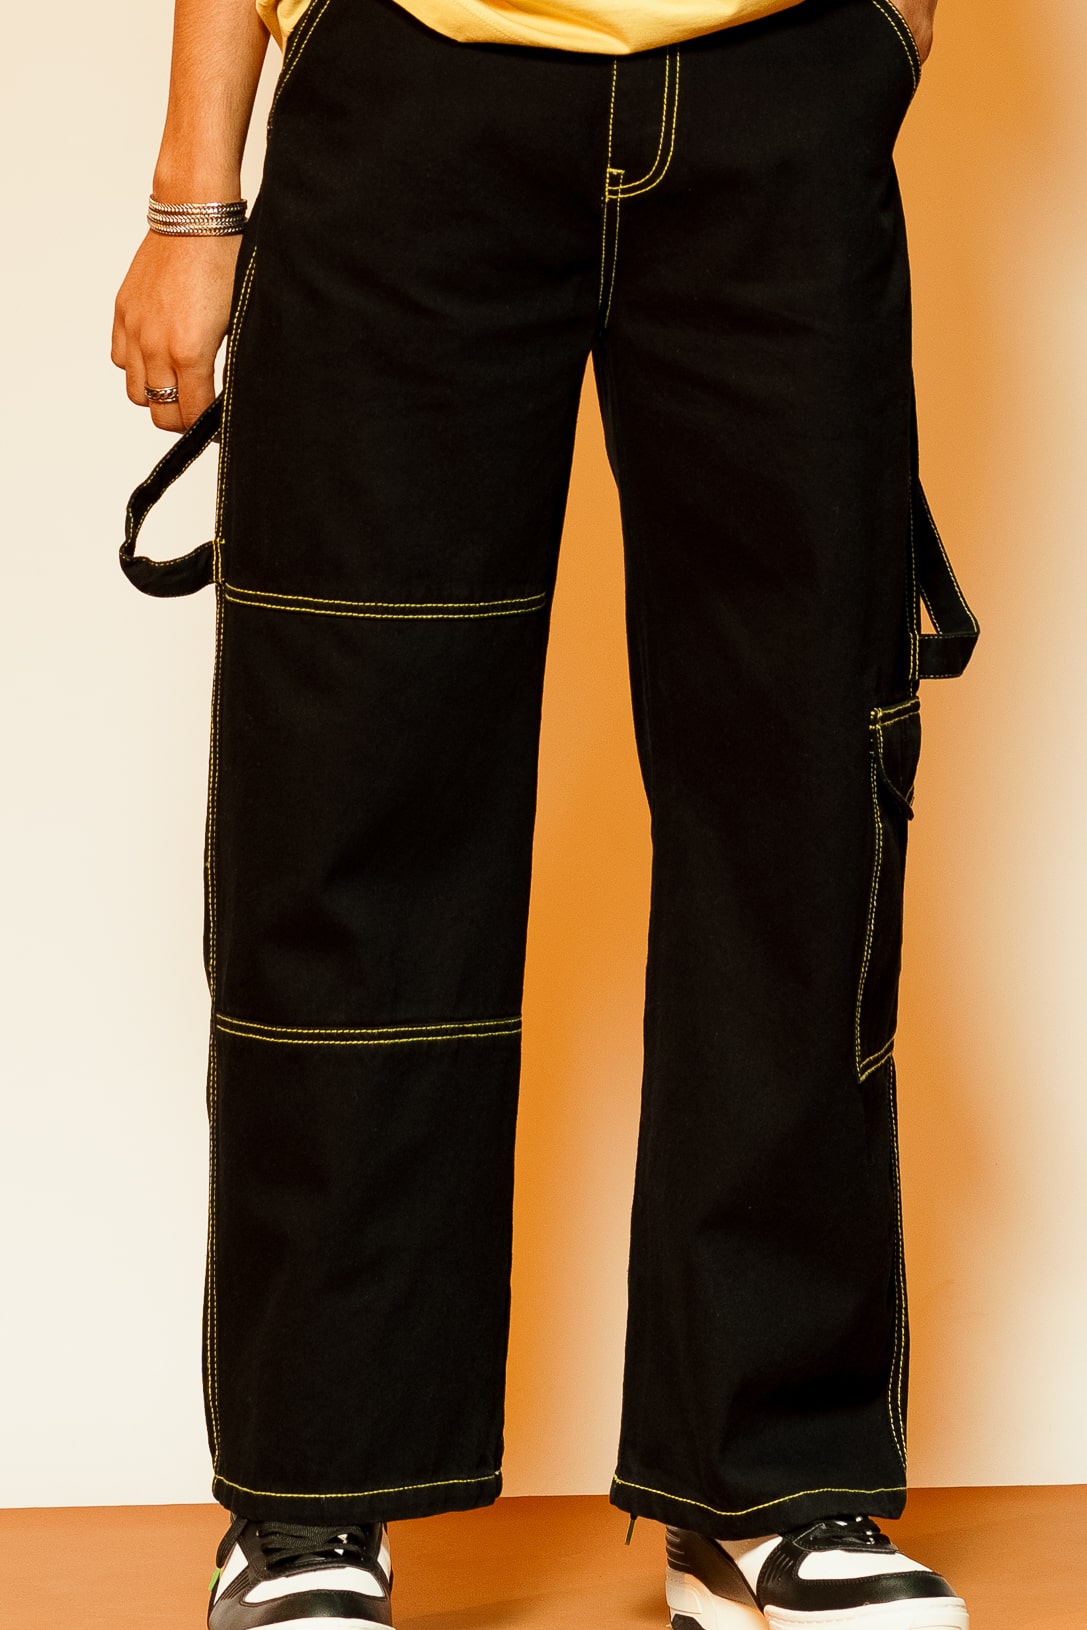 Globus Black Cargo Pants  Globus Fashion